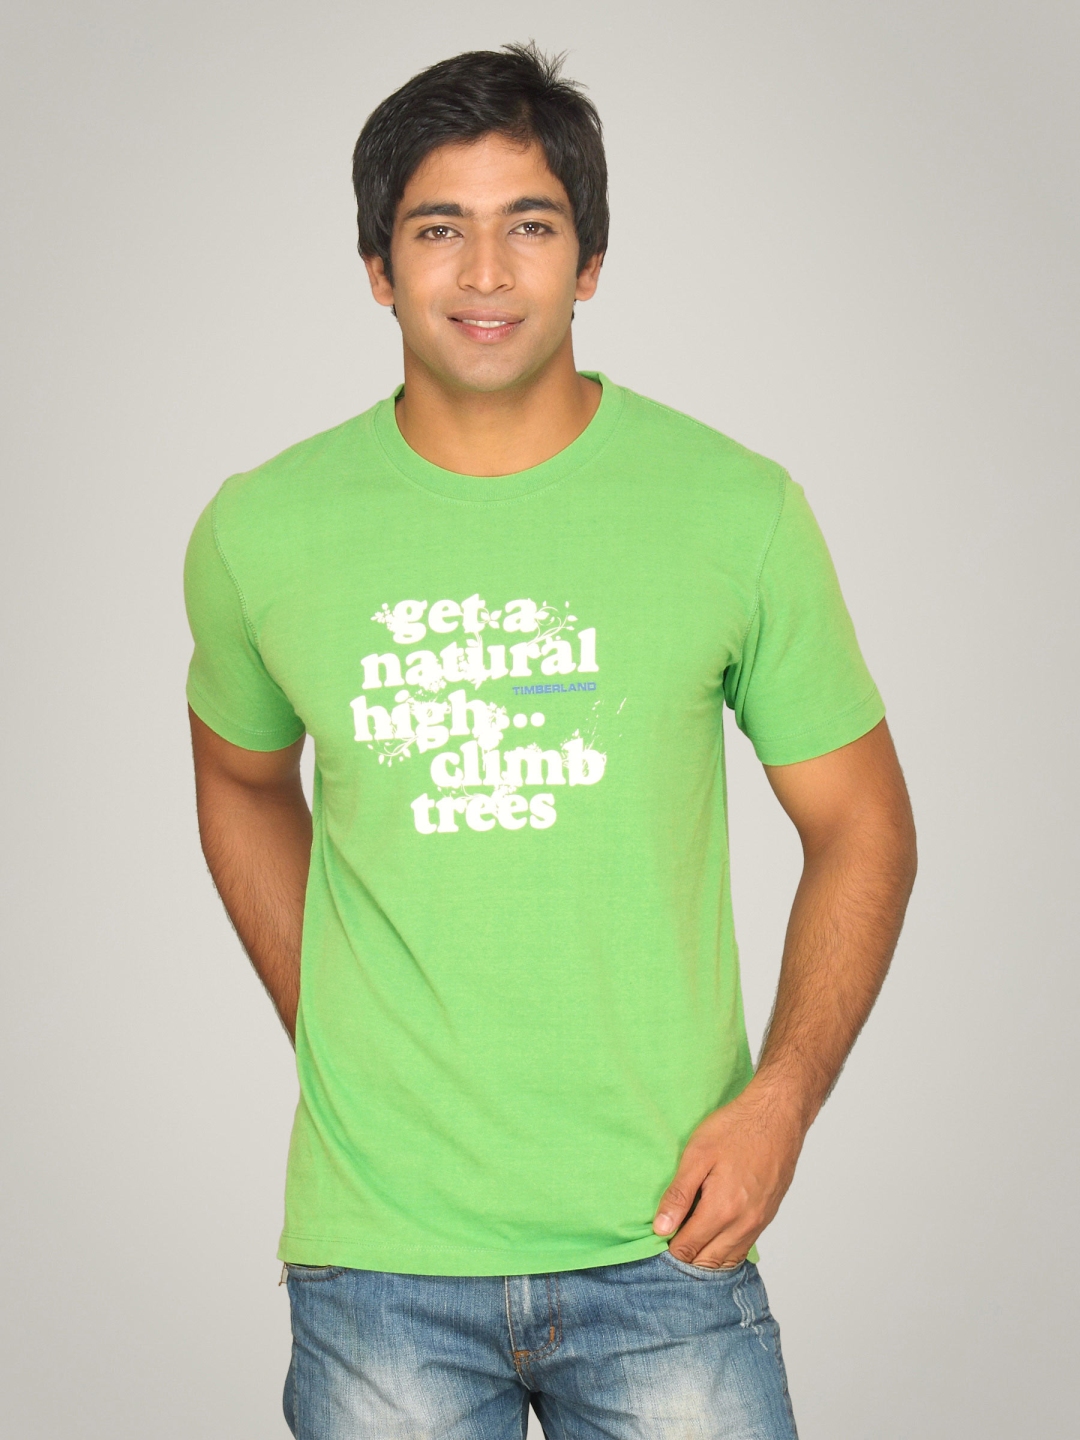 timberland green shirt